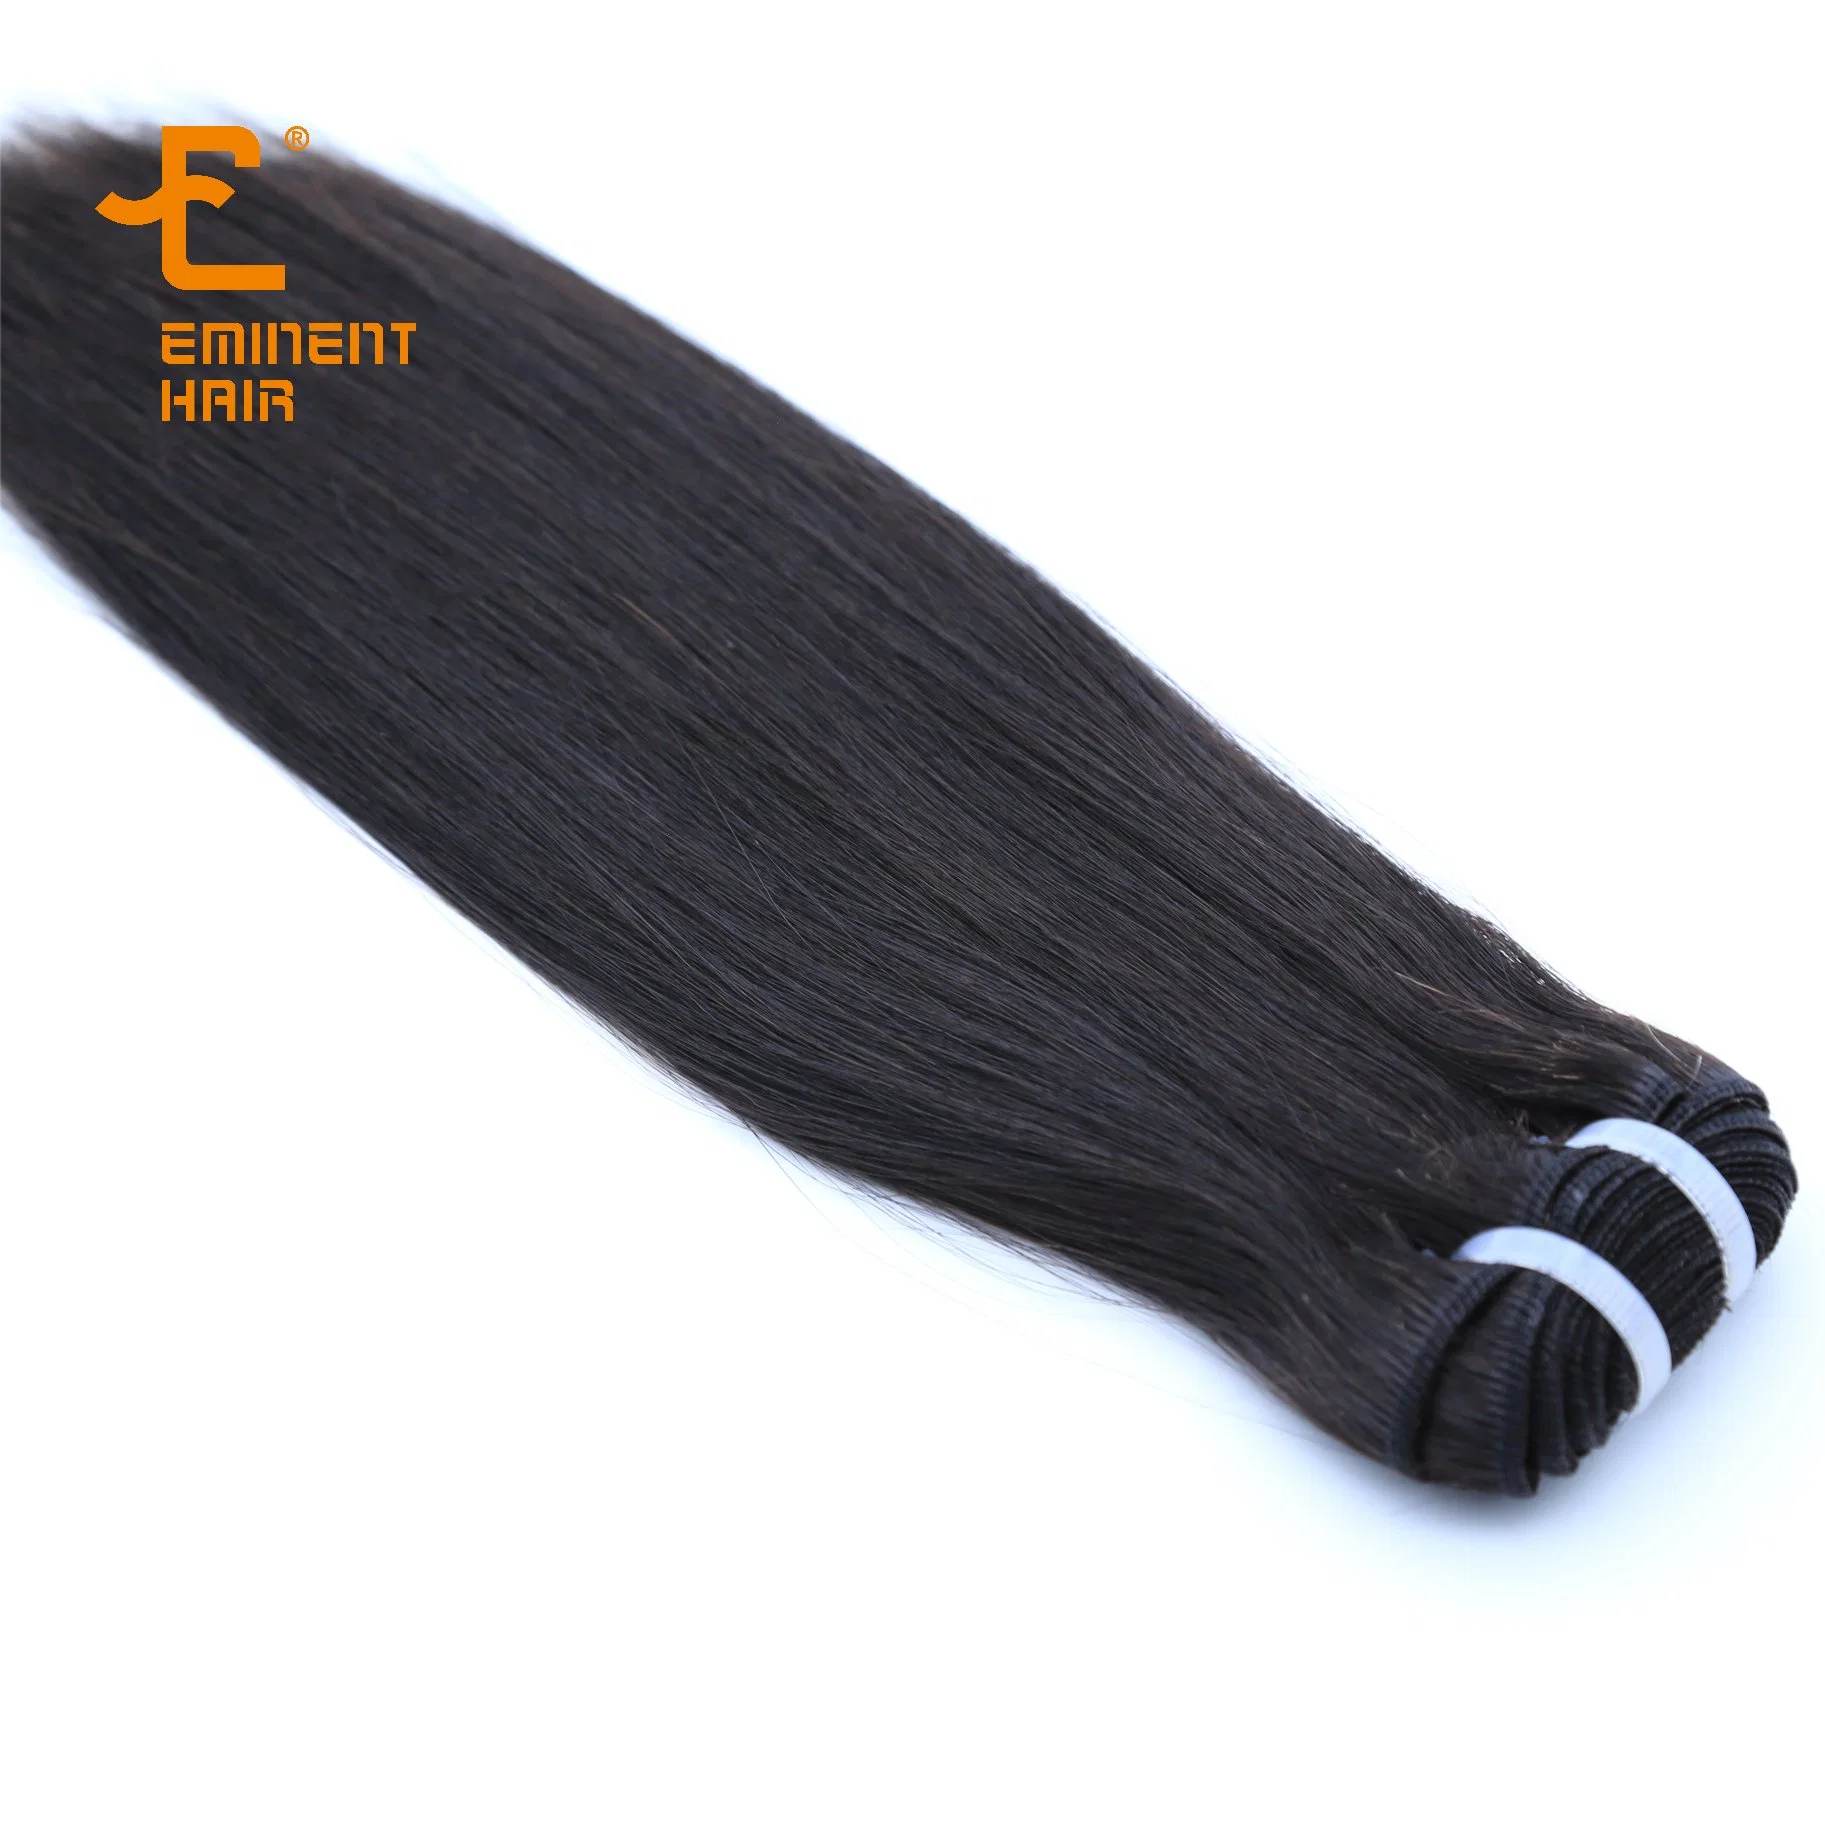 Fábrica de Cabello eminente 10A VVirgin Hair Weft Straight Weaving